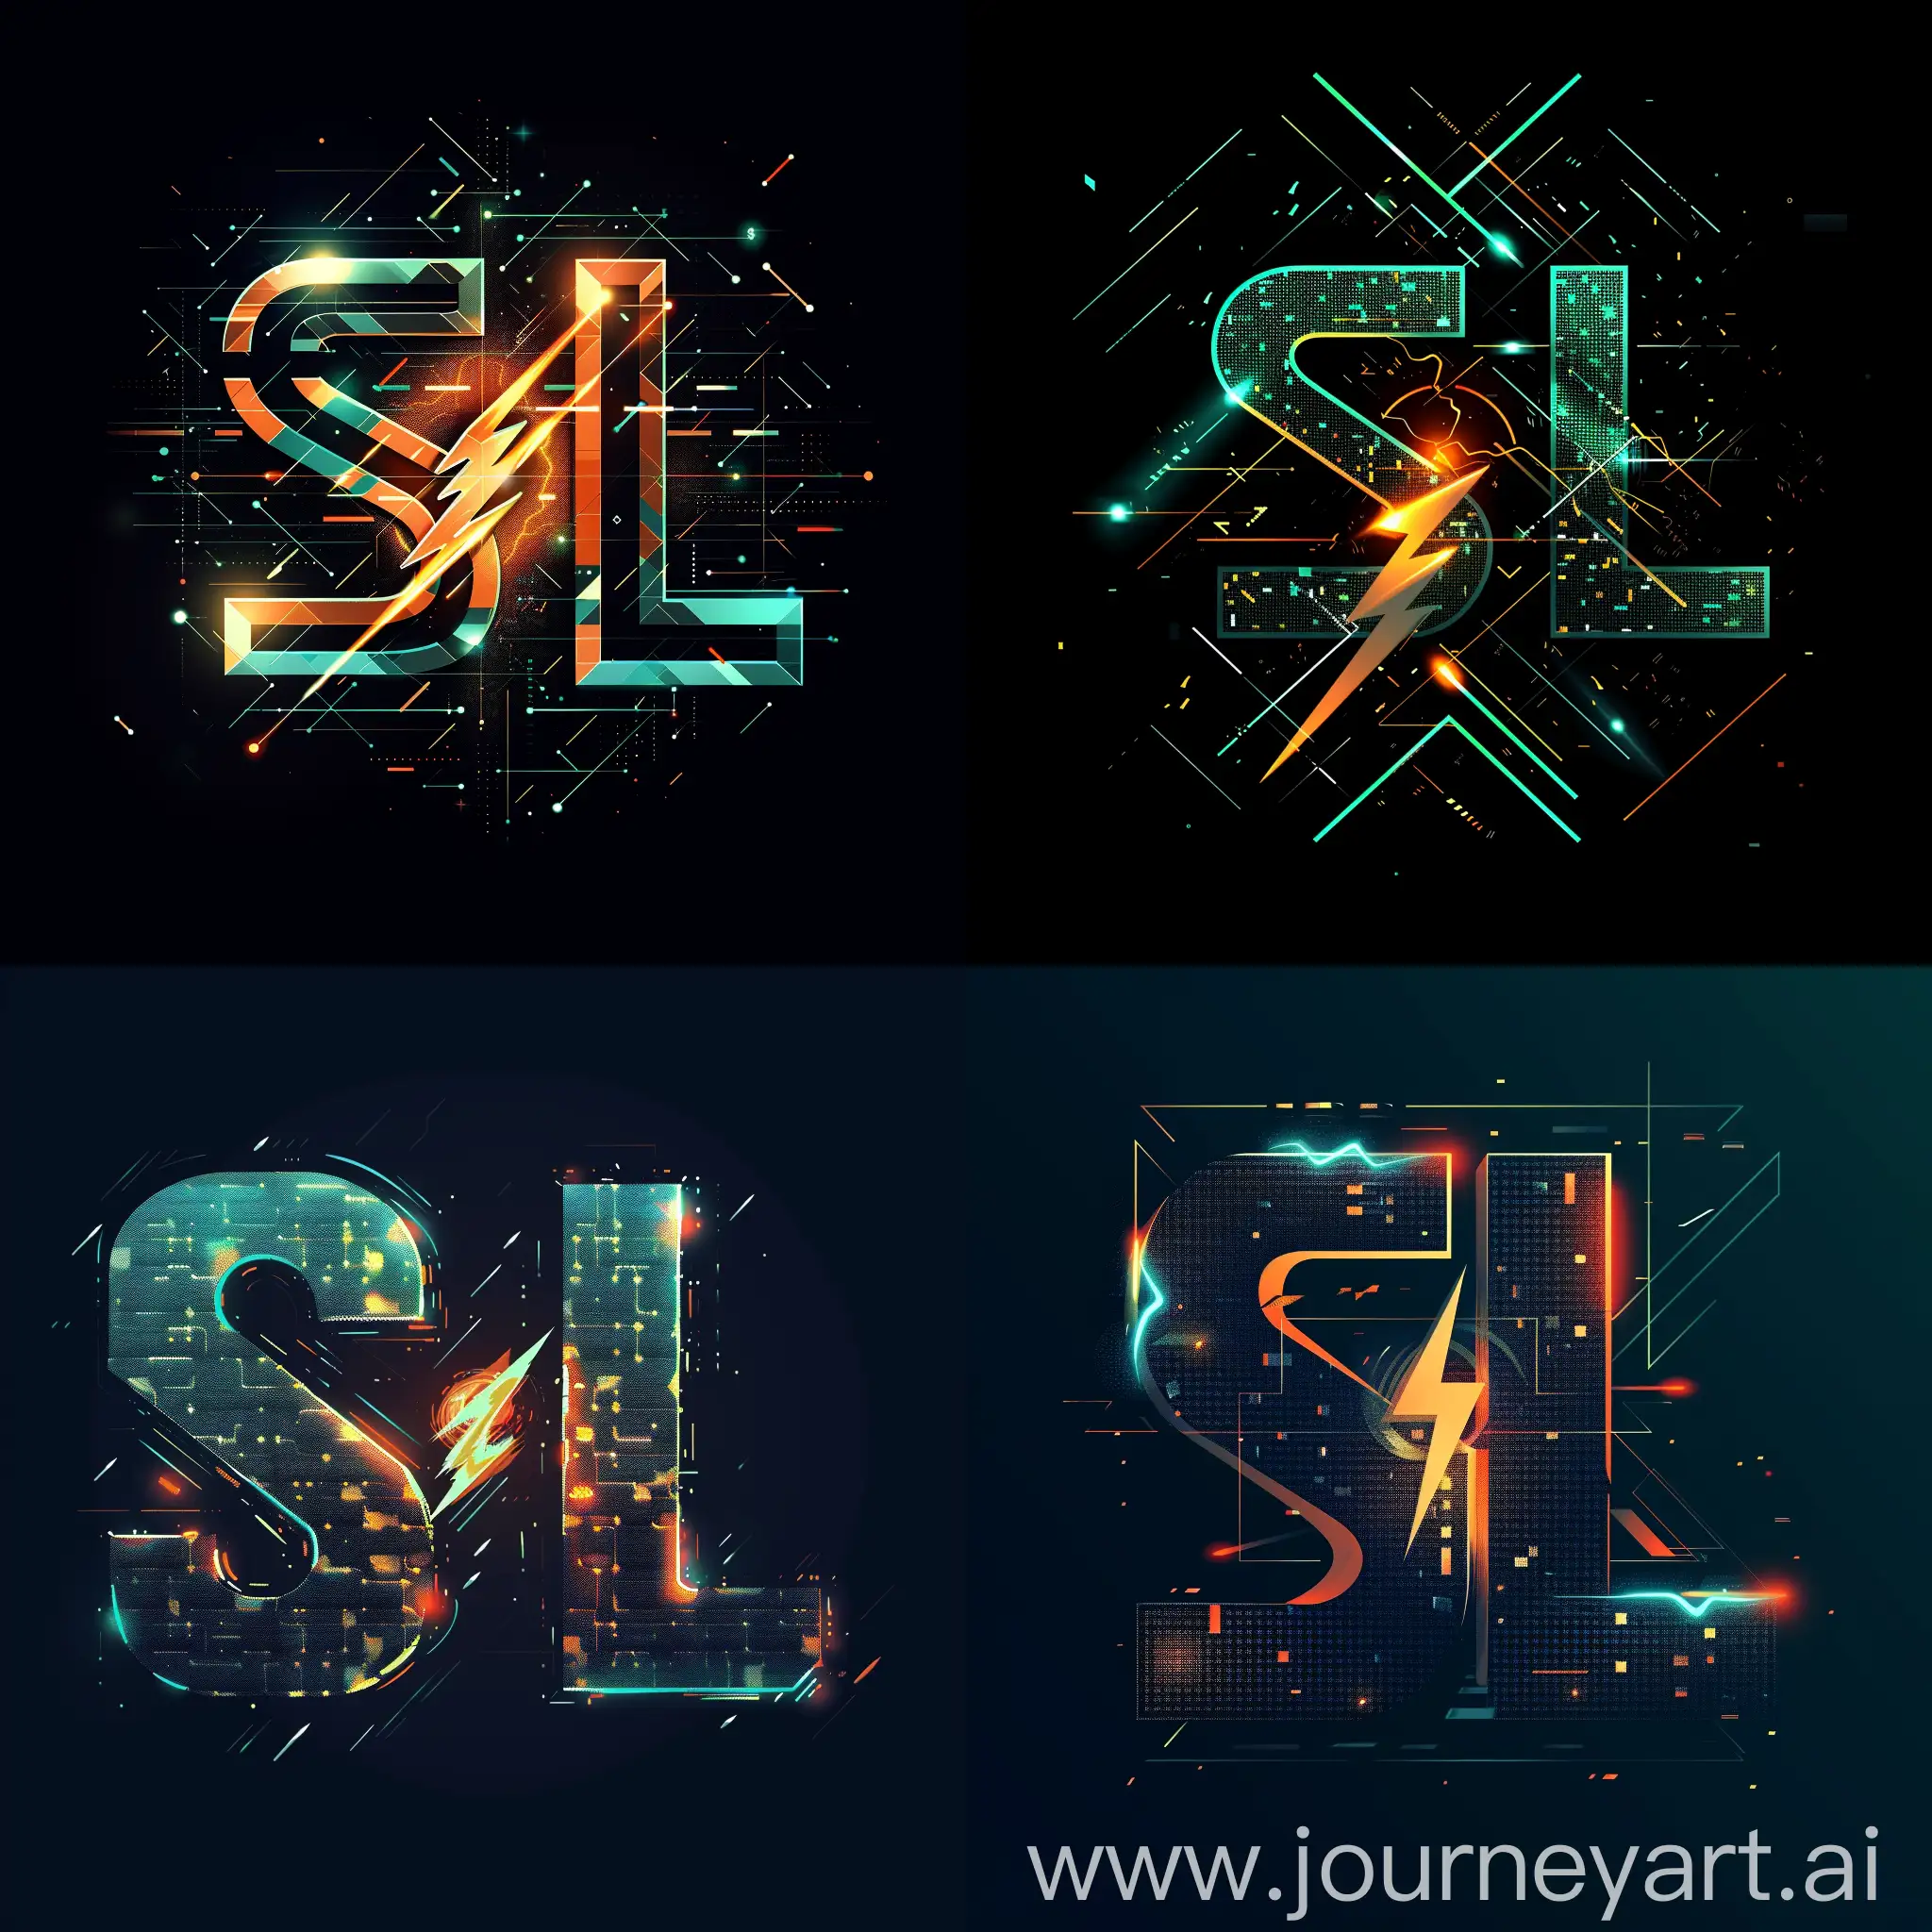 Логотип "SL" представлен в виде футуристических цифровых букв S и L, стилизованных с помощью геометрических форм и линий, буквы выполнены в виде пикселей, имеют эффект трёхмерности, в центре логотипа символ молнию или огненный шар, цветовая гамма современная, черно-синей, черно-зеленой, --quality 3 --s 200